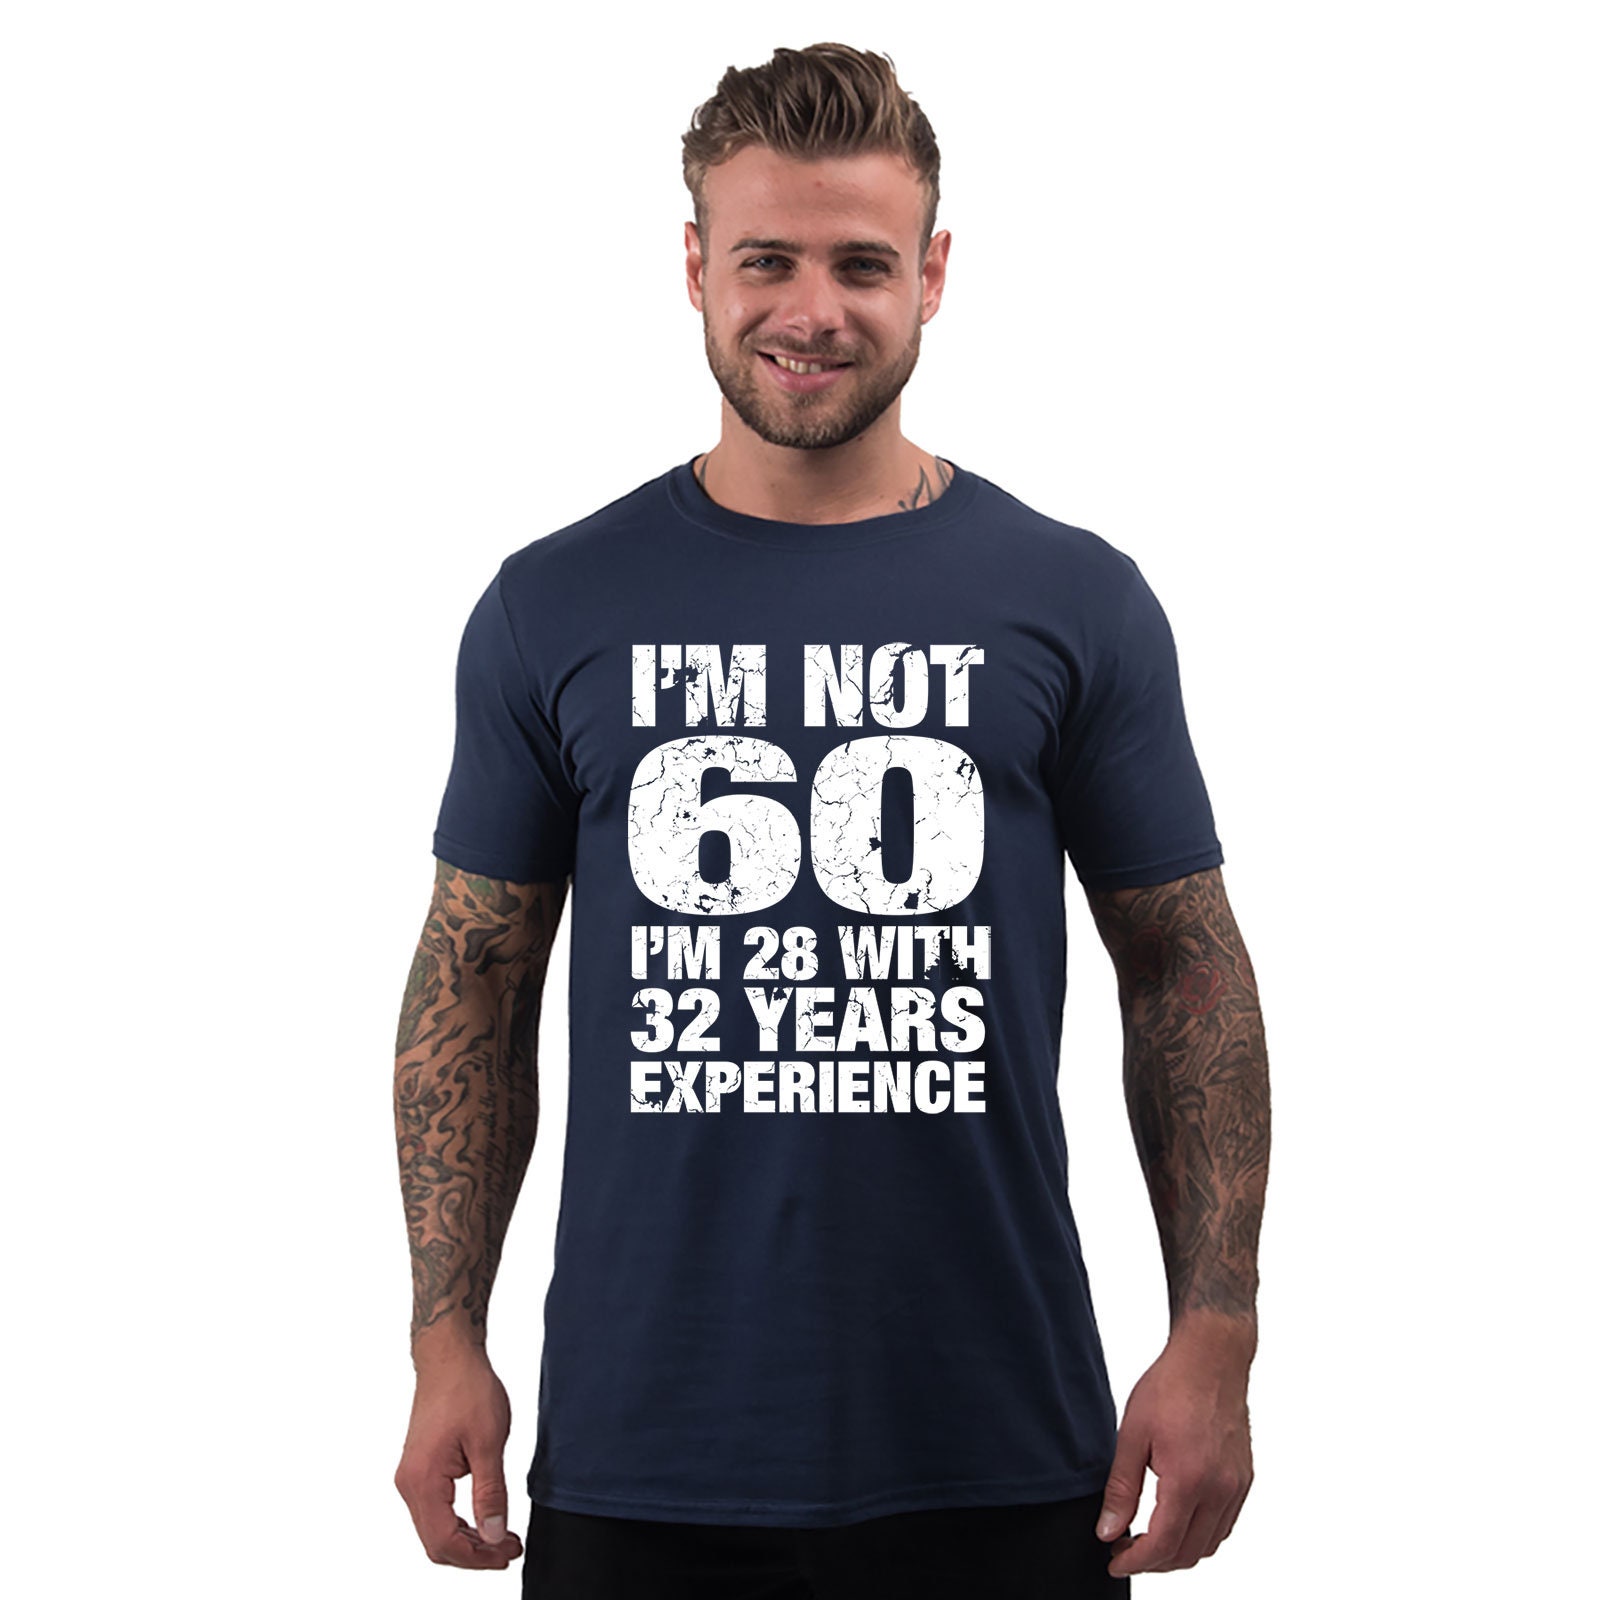 Geschenkidee zum 60 Geburtstag Ich bin 18 mit 42 Jahren Erfahrung Frau T-Shirt 